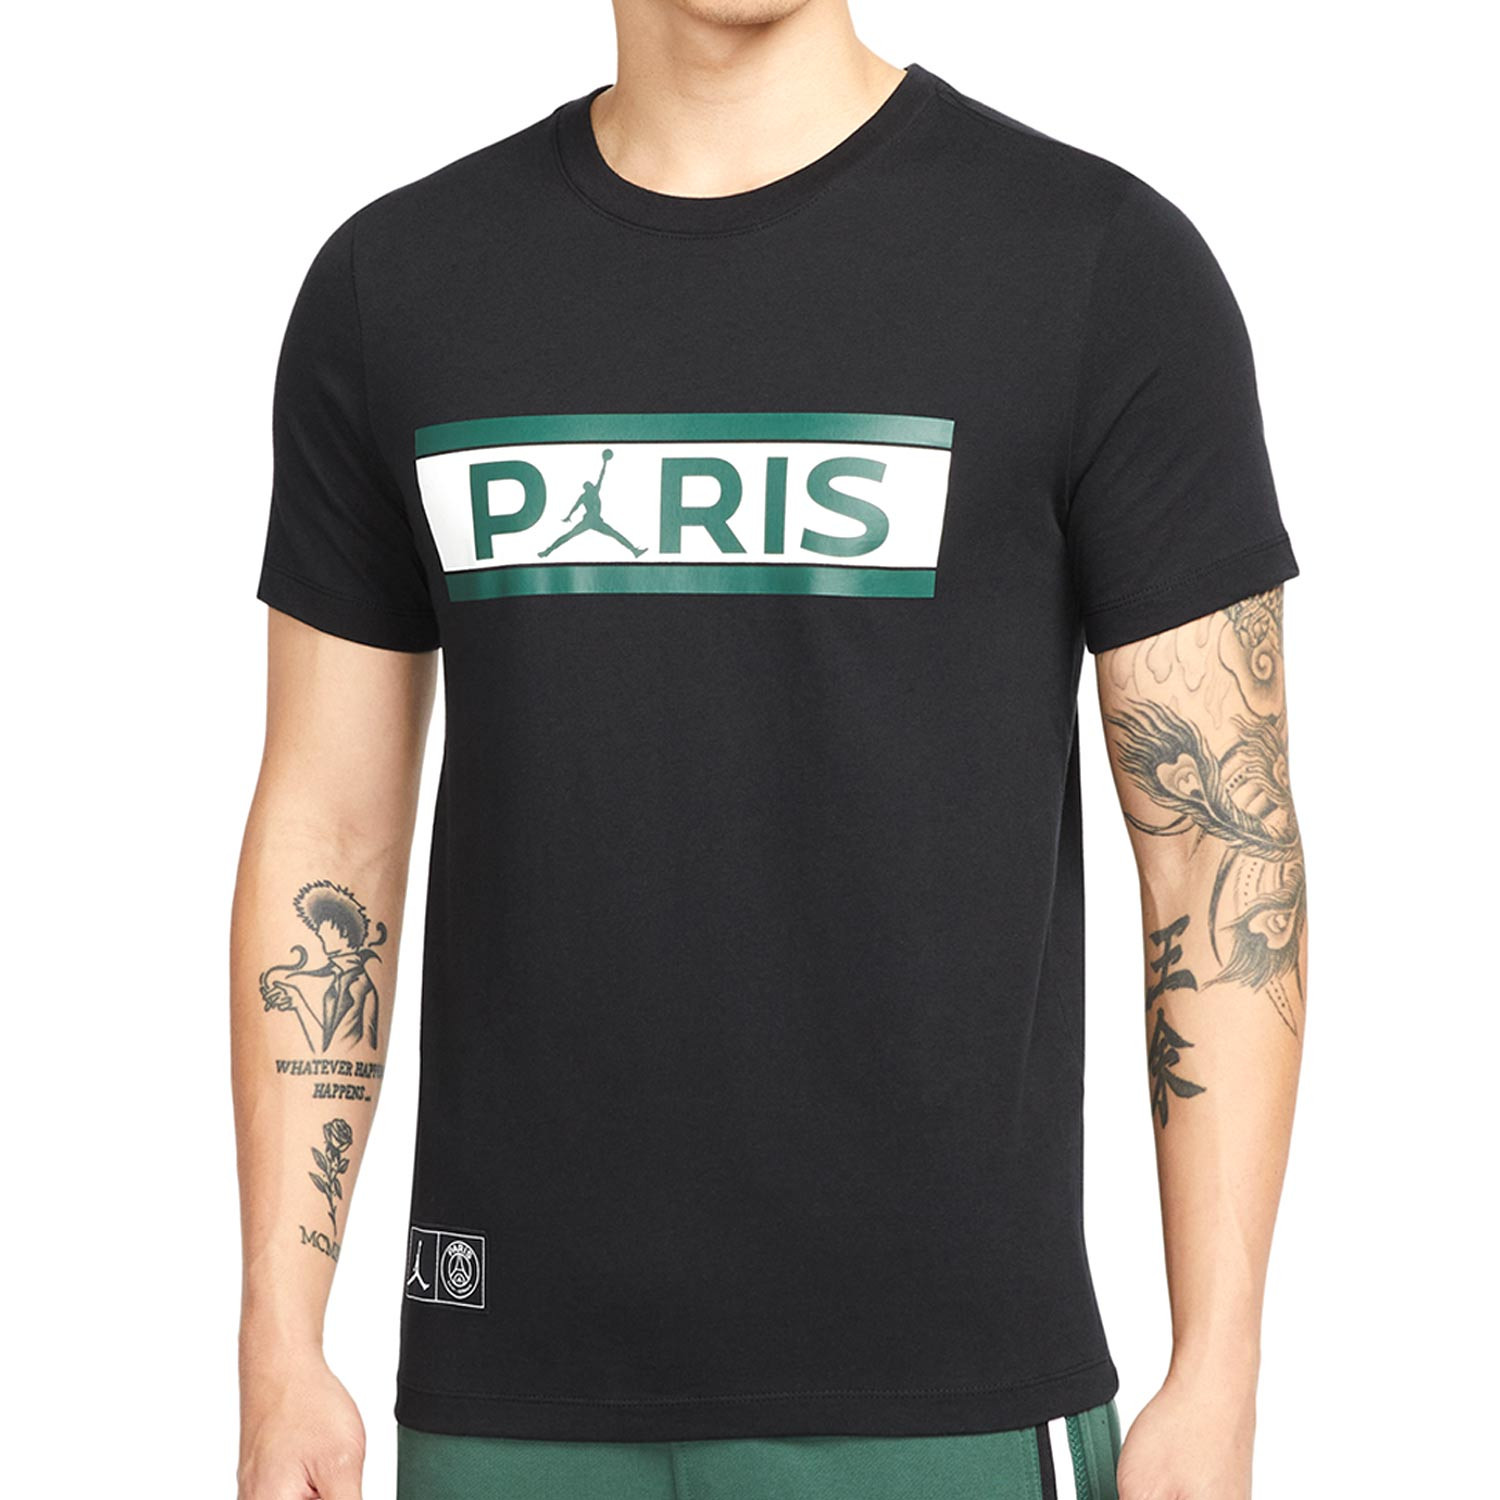 Broma Evaluación Se convierte en Camiseta Nike PSG x Jordan Wordmark negra | futbolmania